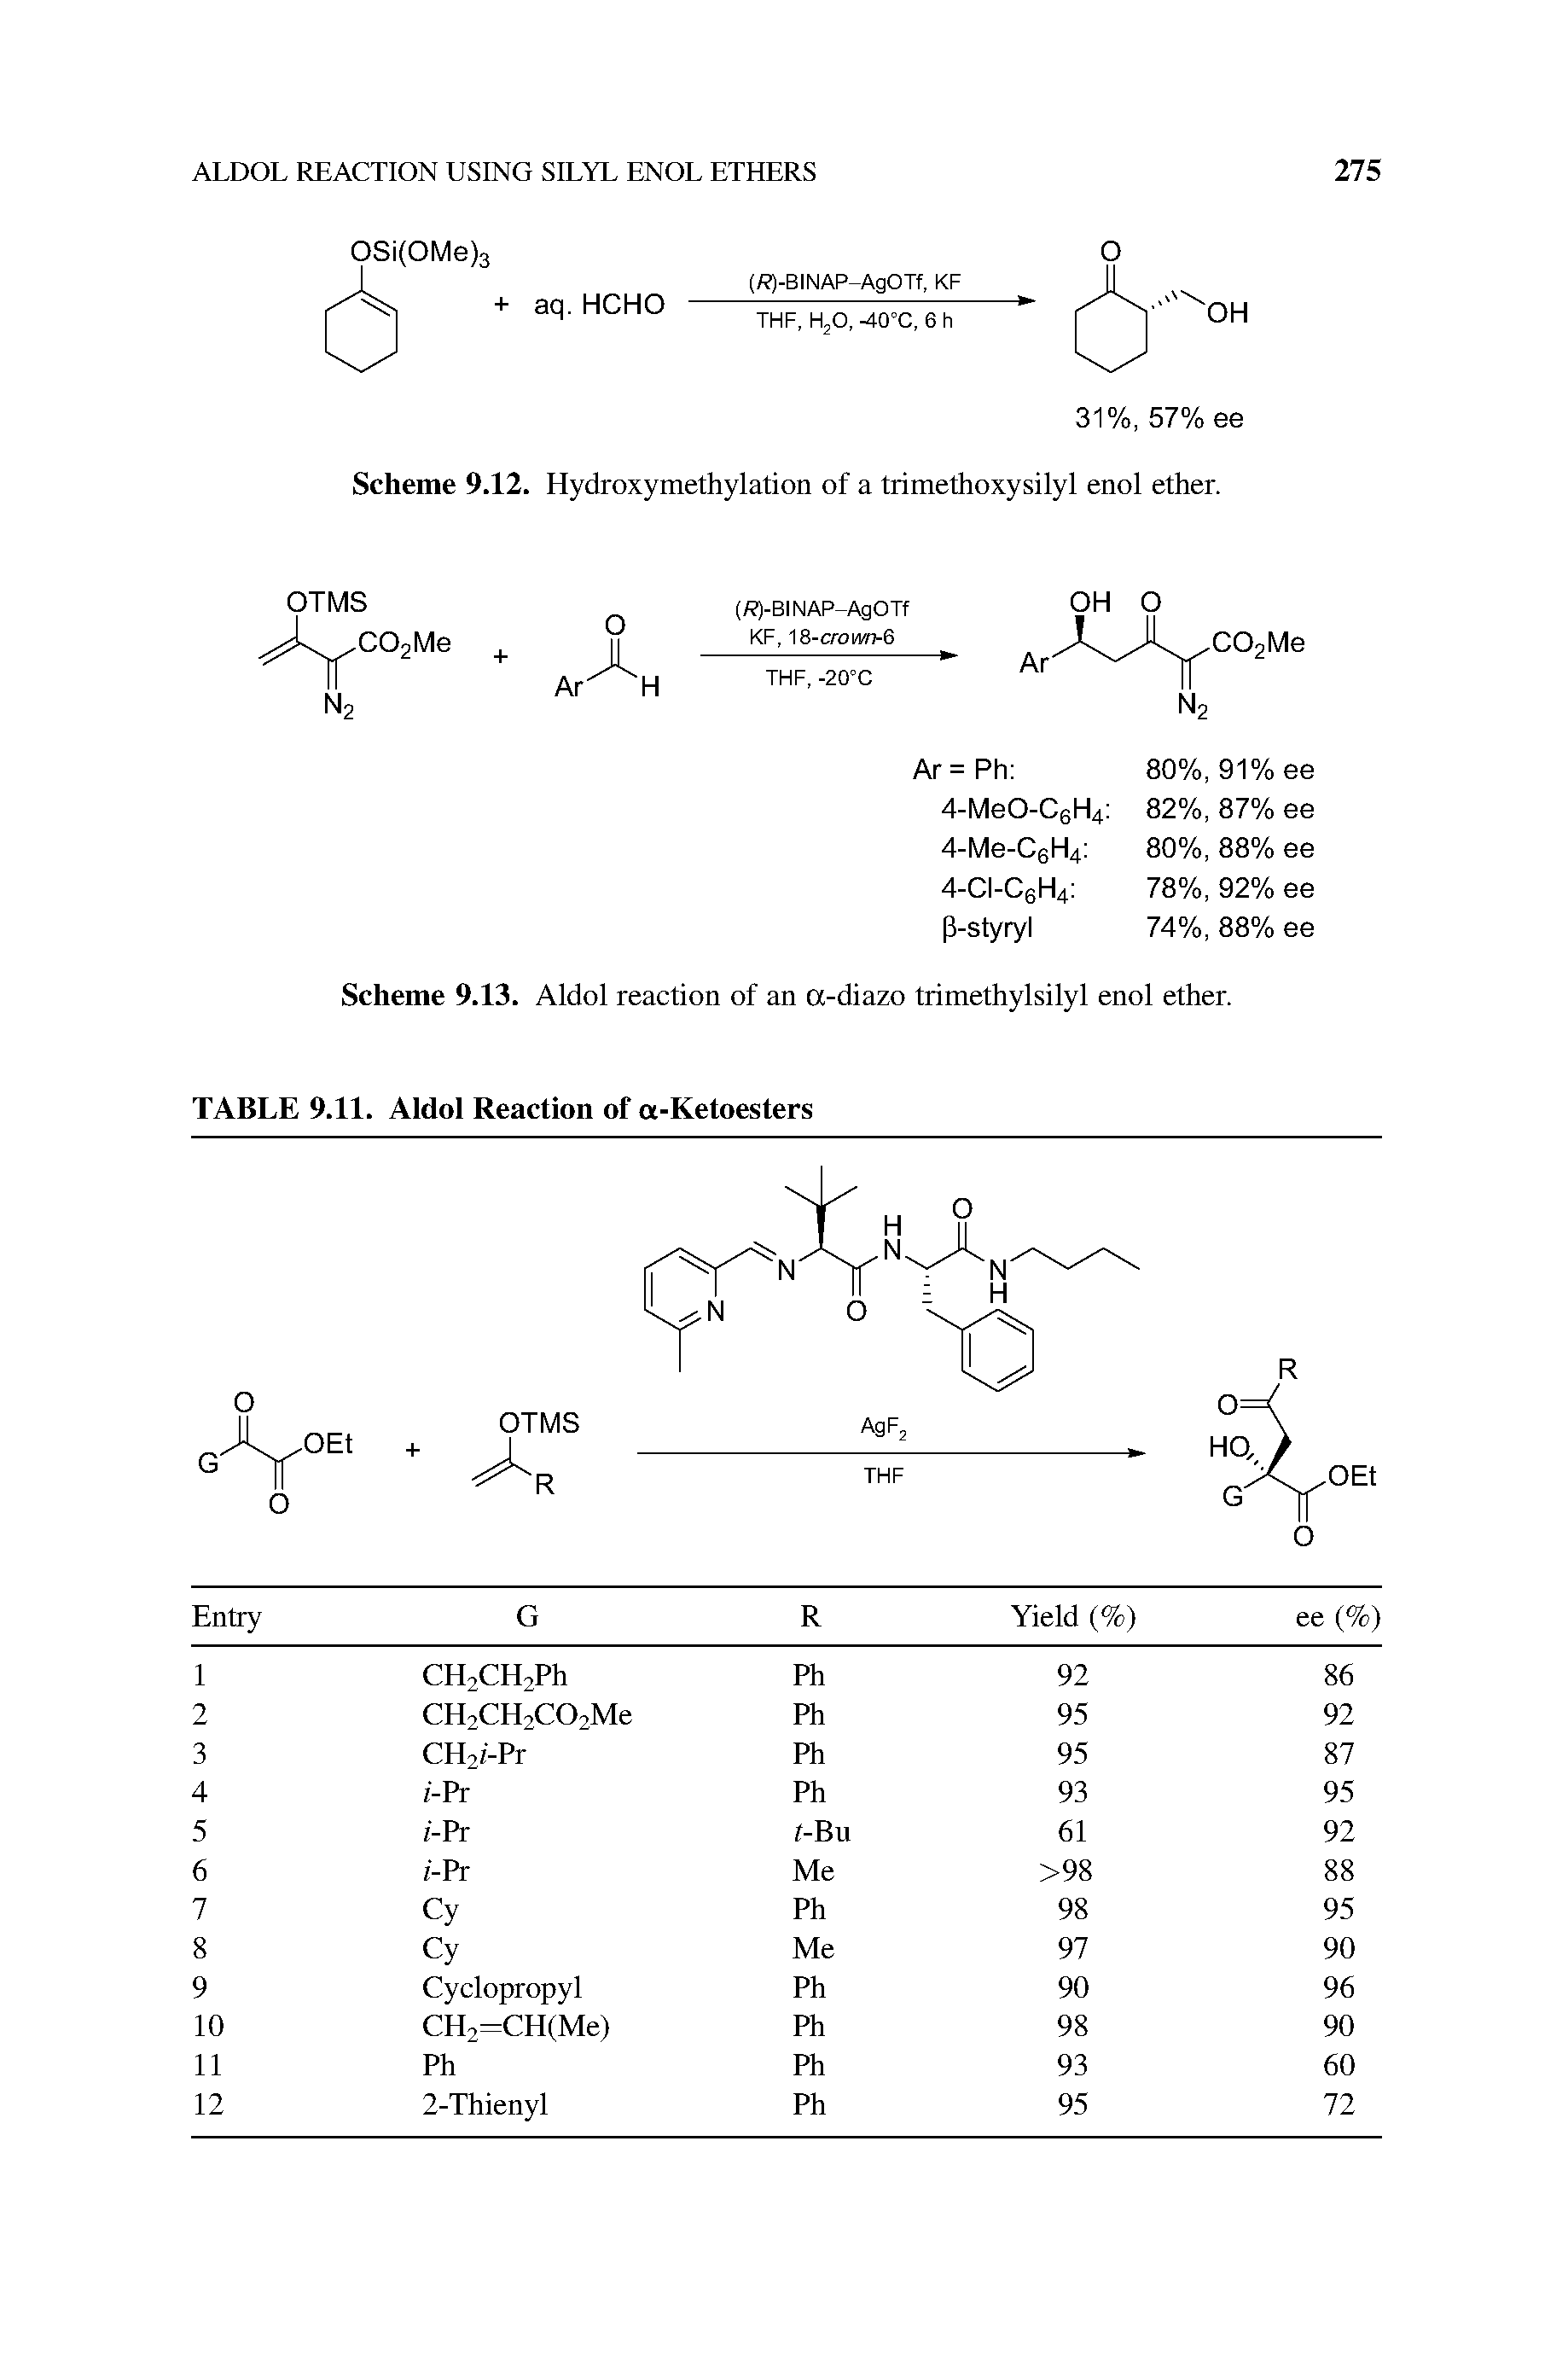 Scheme 9.13. Aldol reaction of an a-diazo trimethylsilyl enol ether.